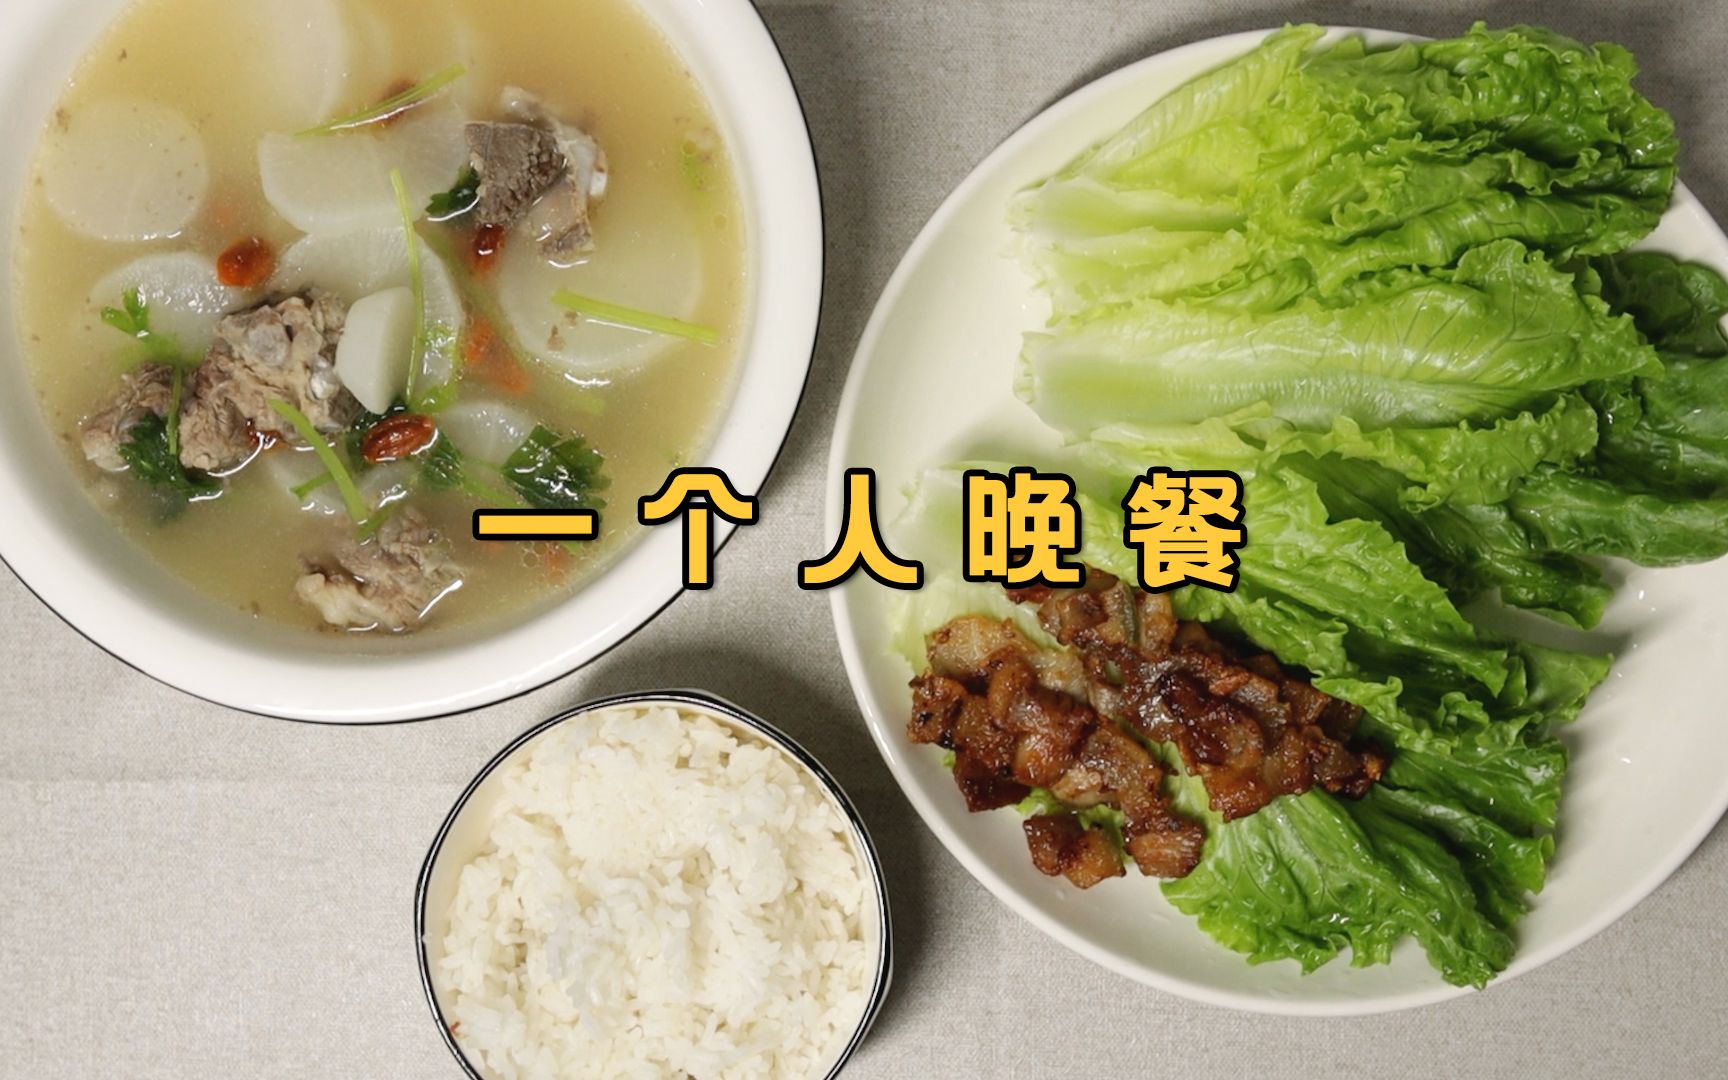 姜薯鱼头汤，潮汕人的午餐，简简单单2菜一汤 - 哔哩哔哩